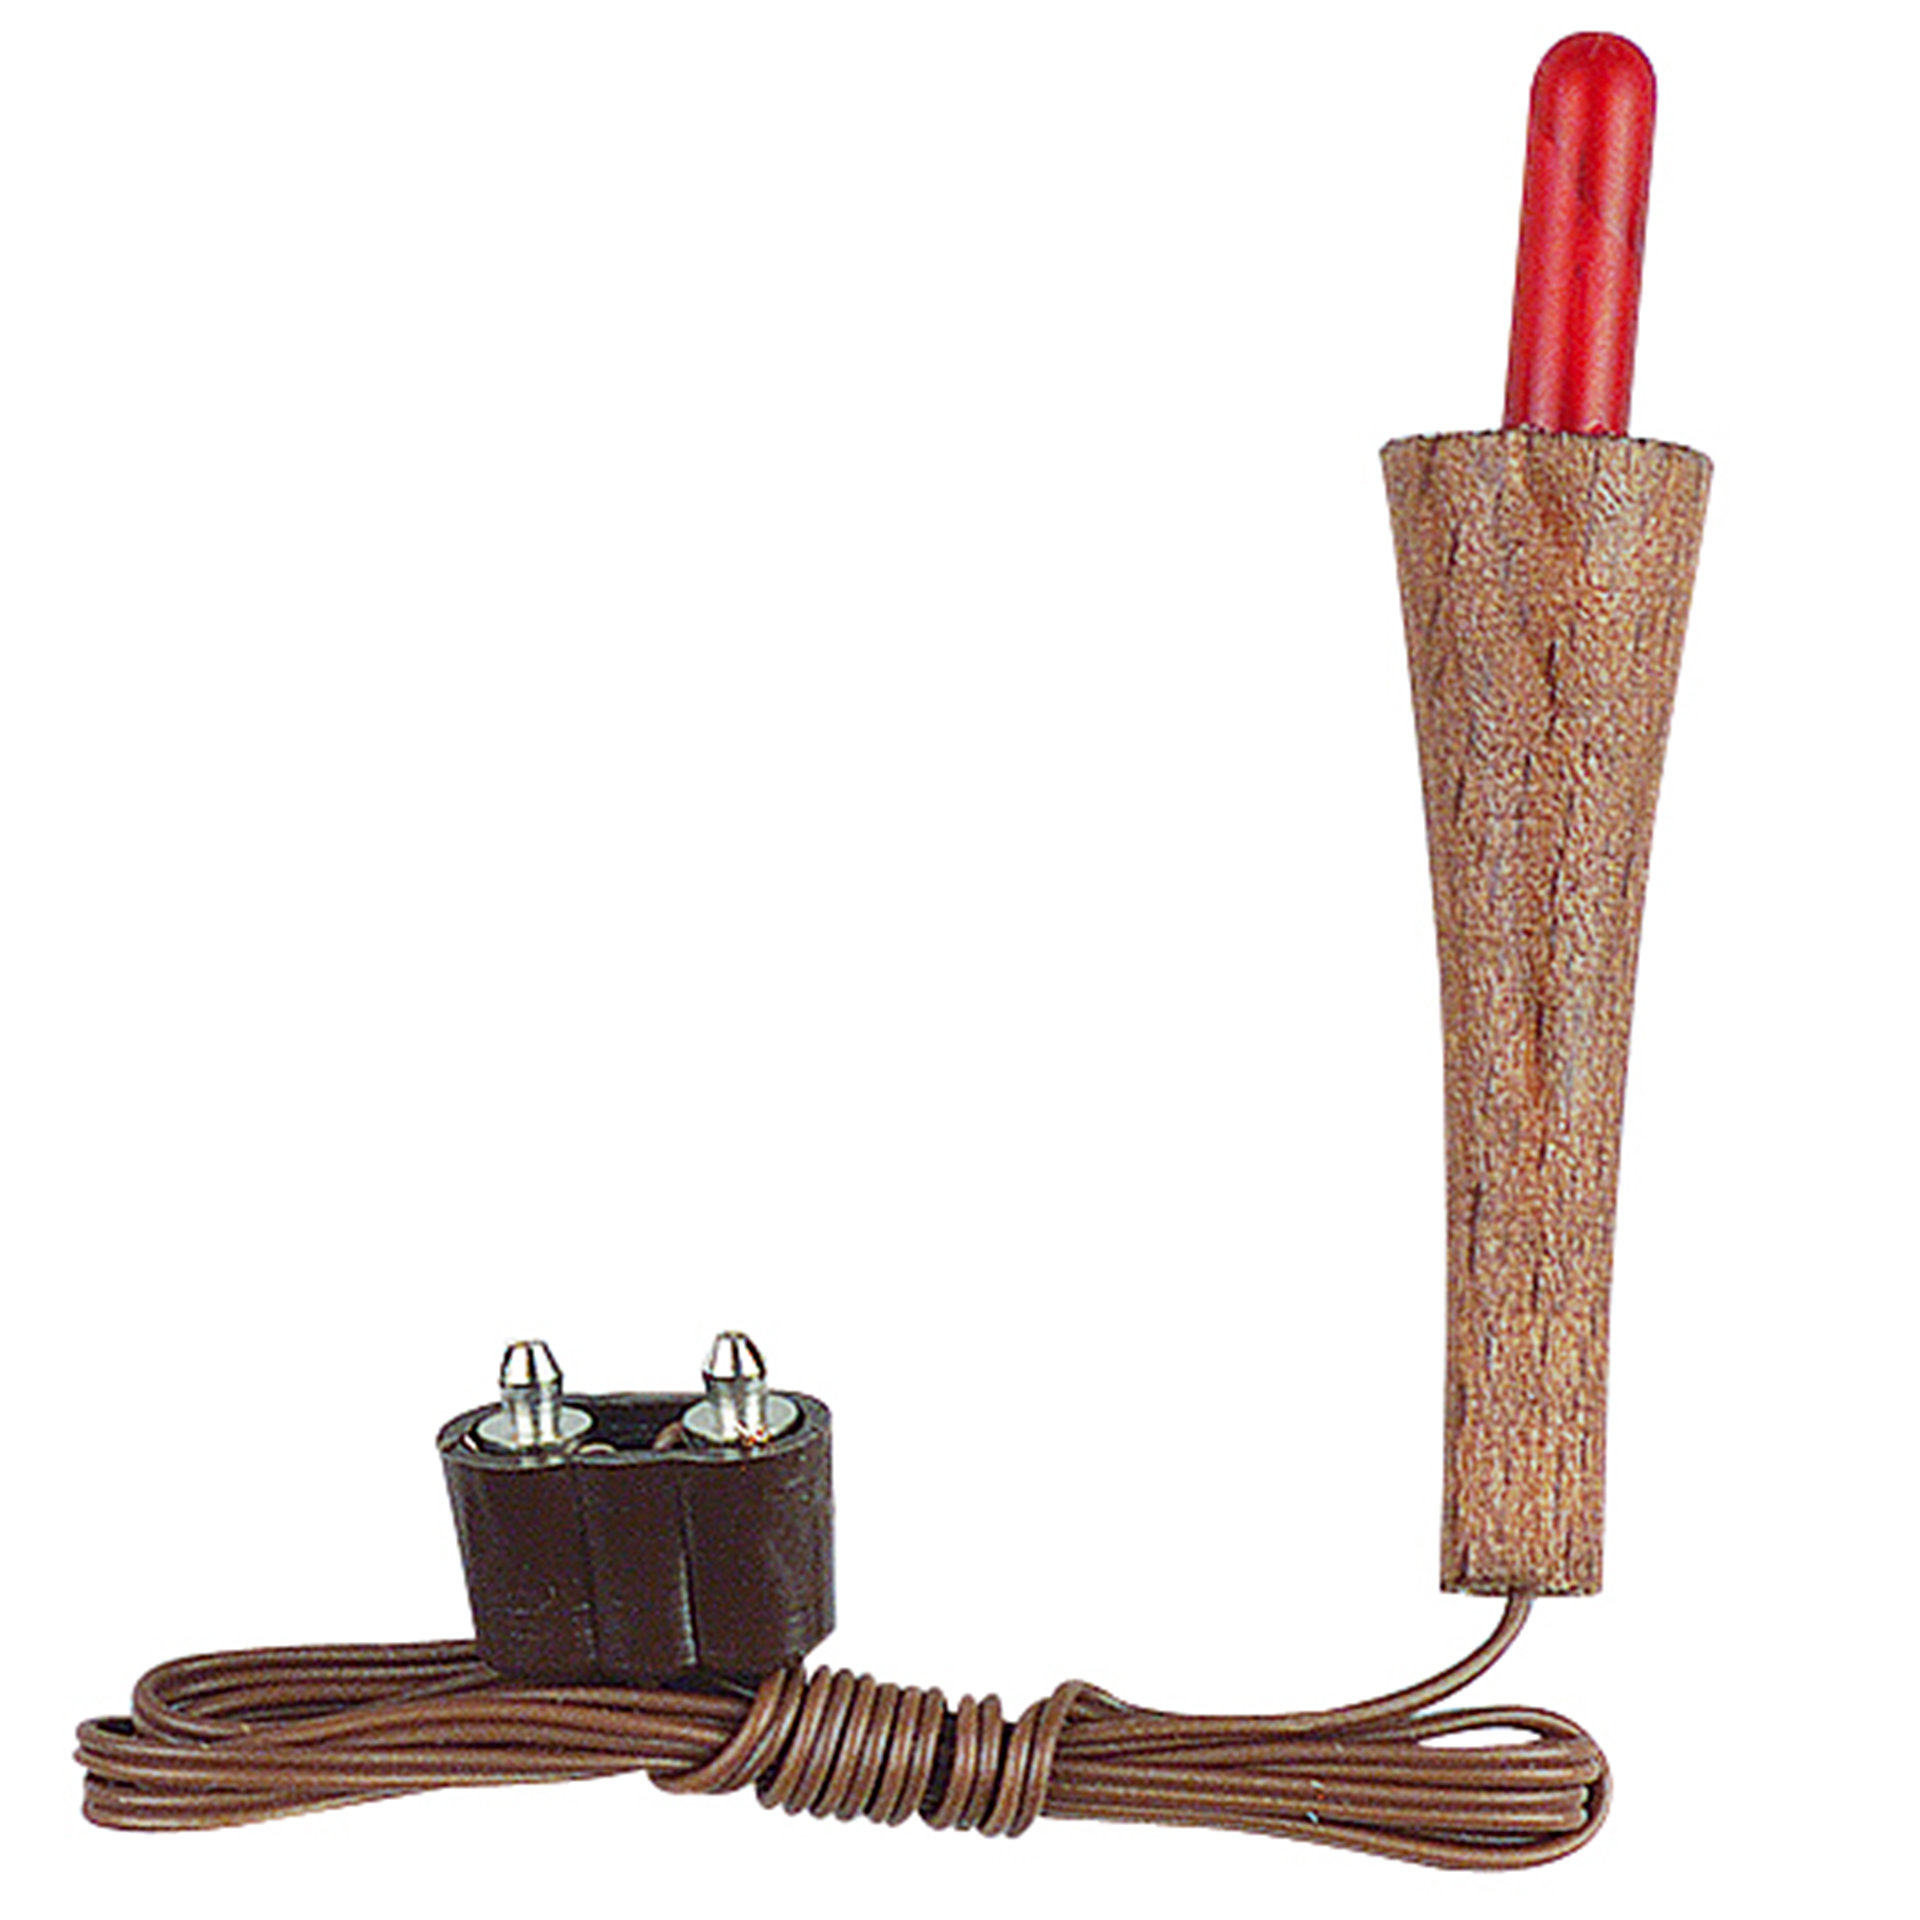 Holzfackel mit rotem Birnchen und Kabel